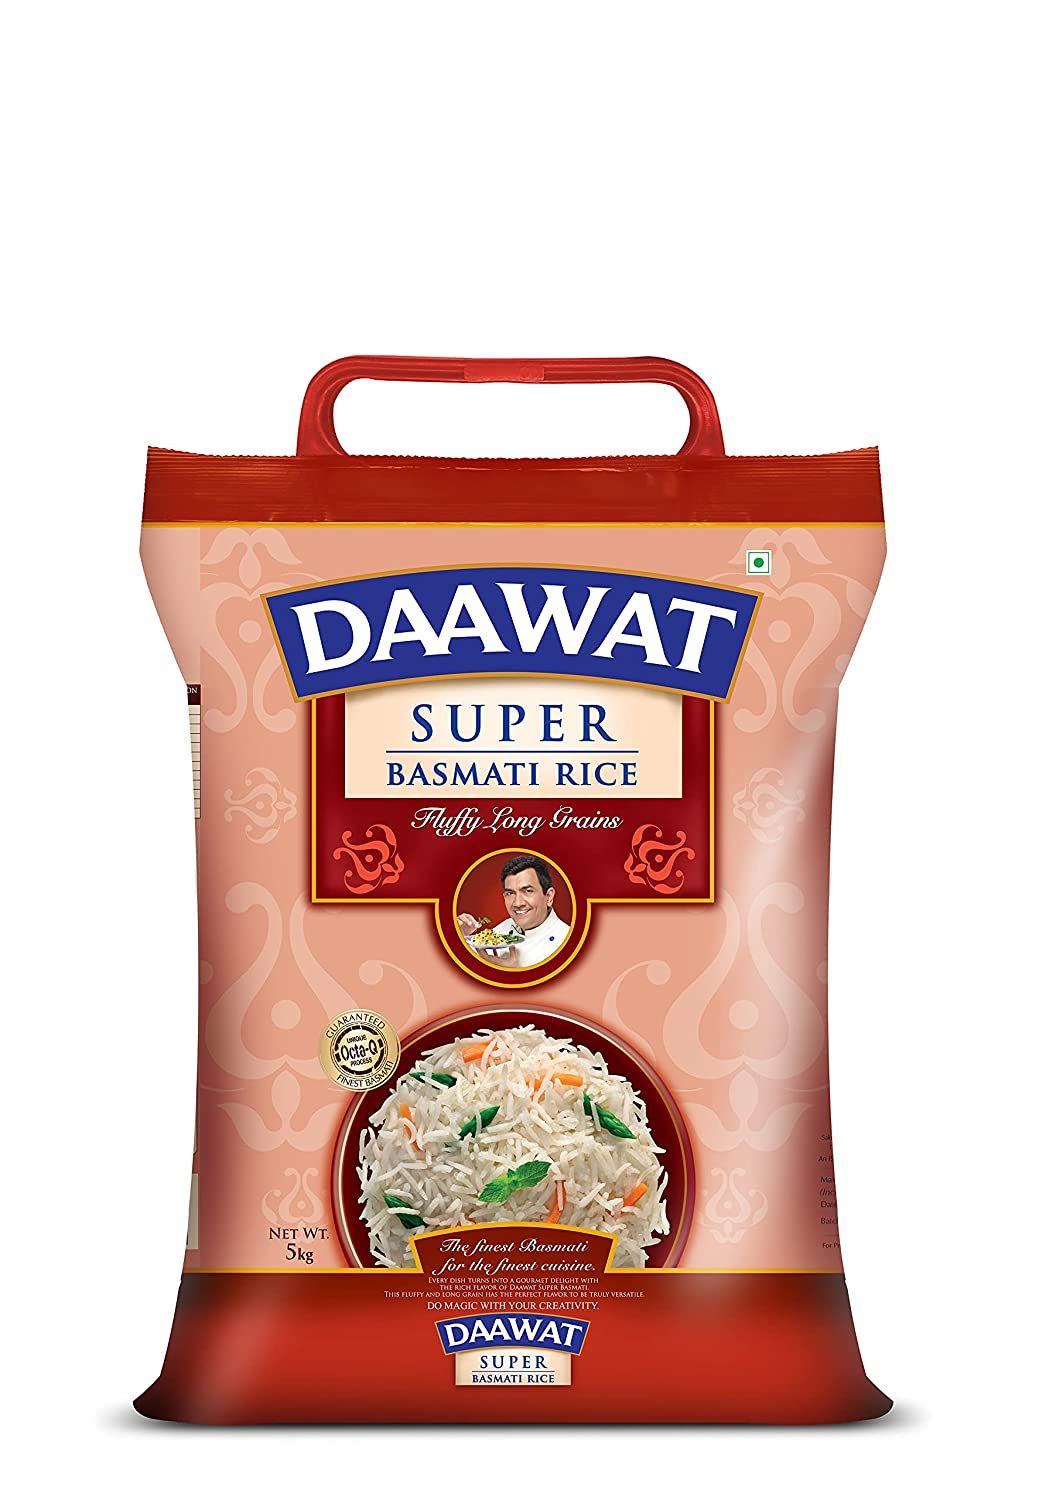 Daawat Super Basmati Rice Image